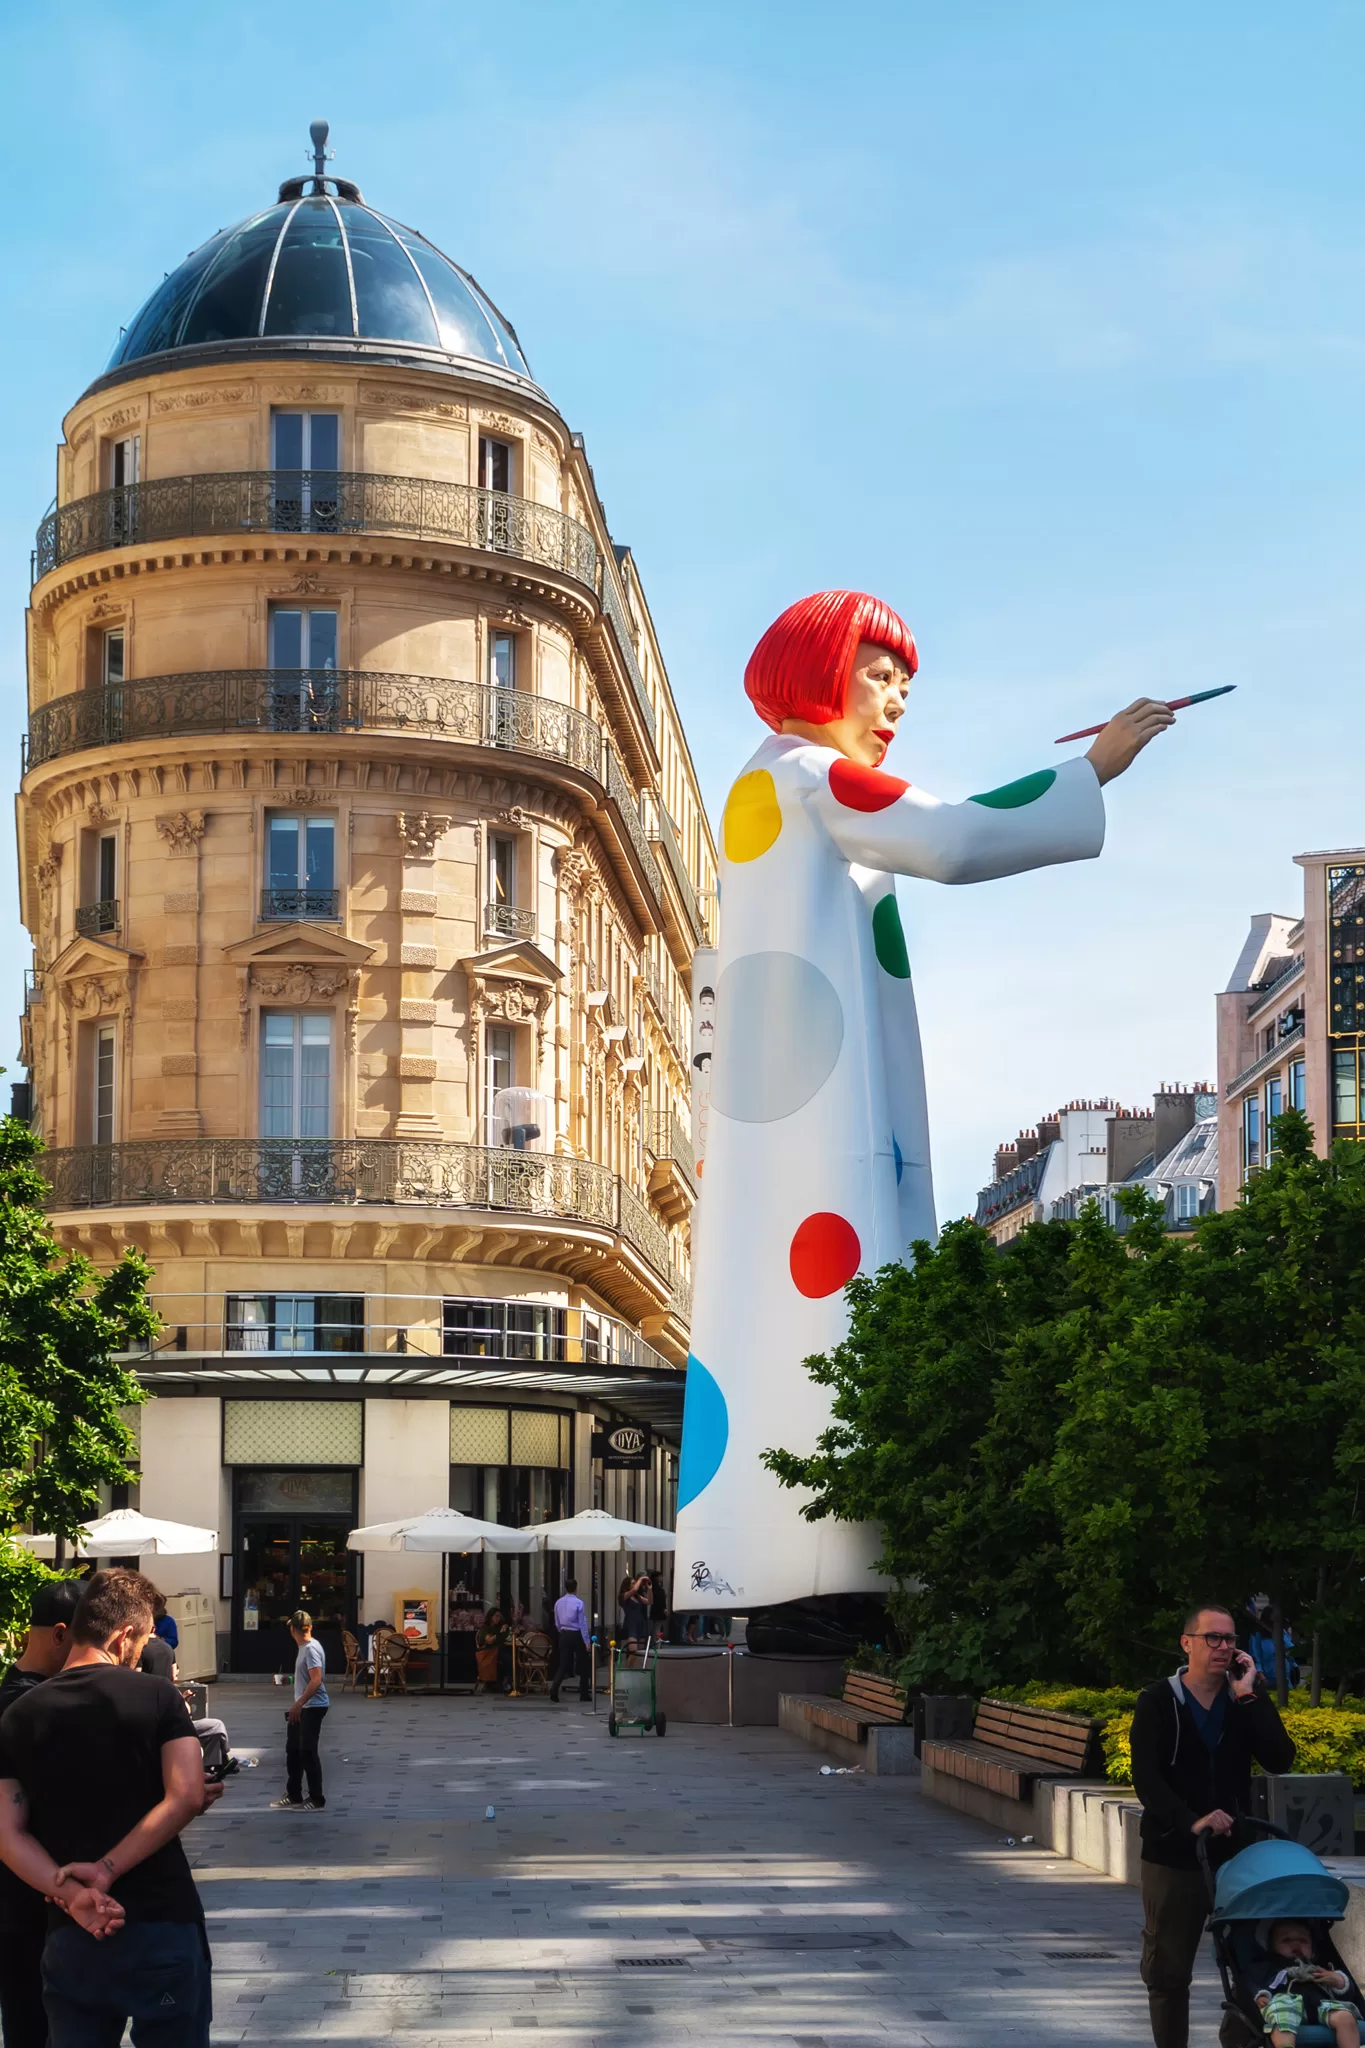 Paris Instagram photo hot spot - Louis Vuitton Statue and paintbrush